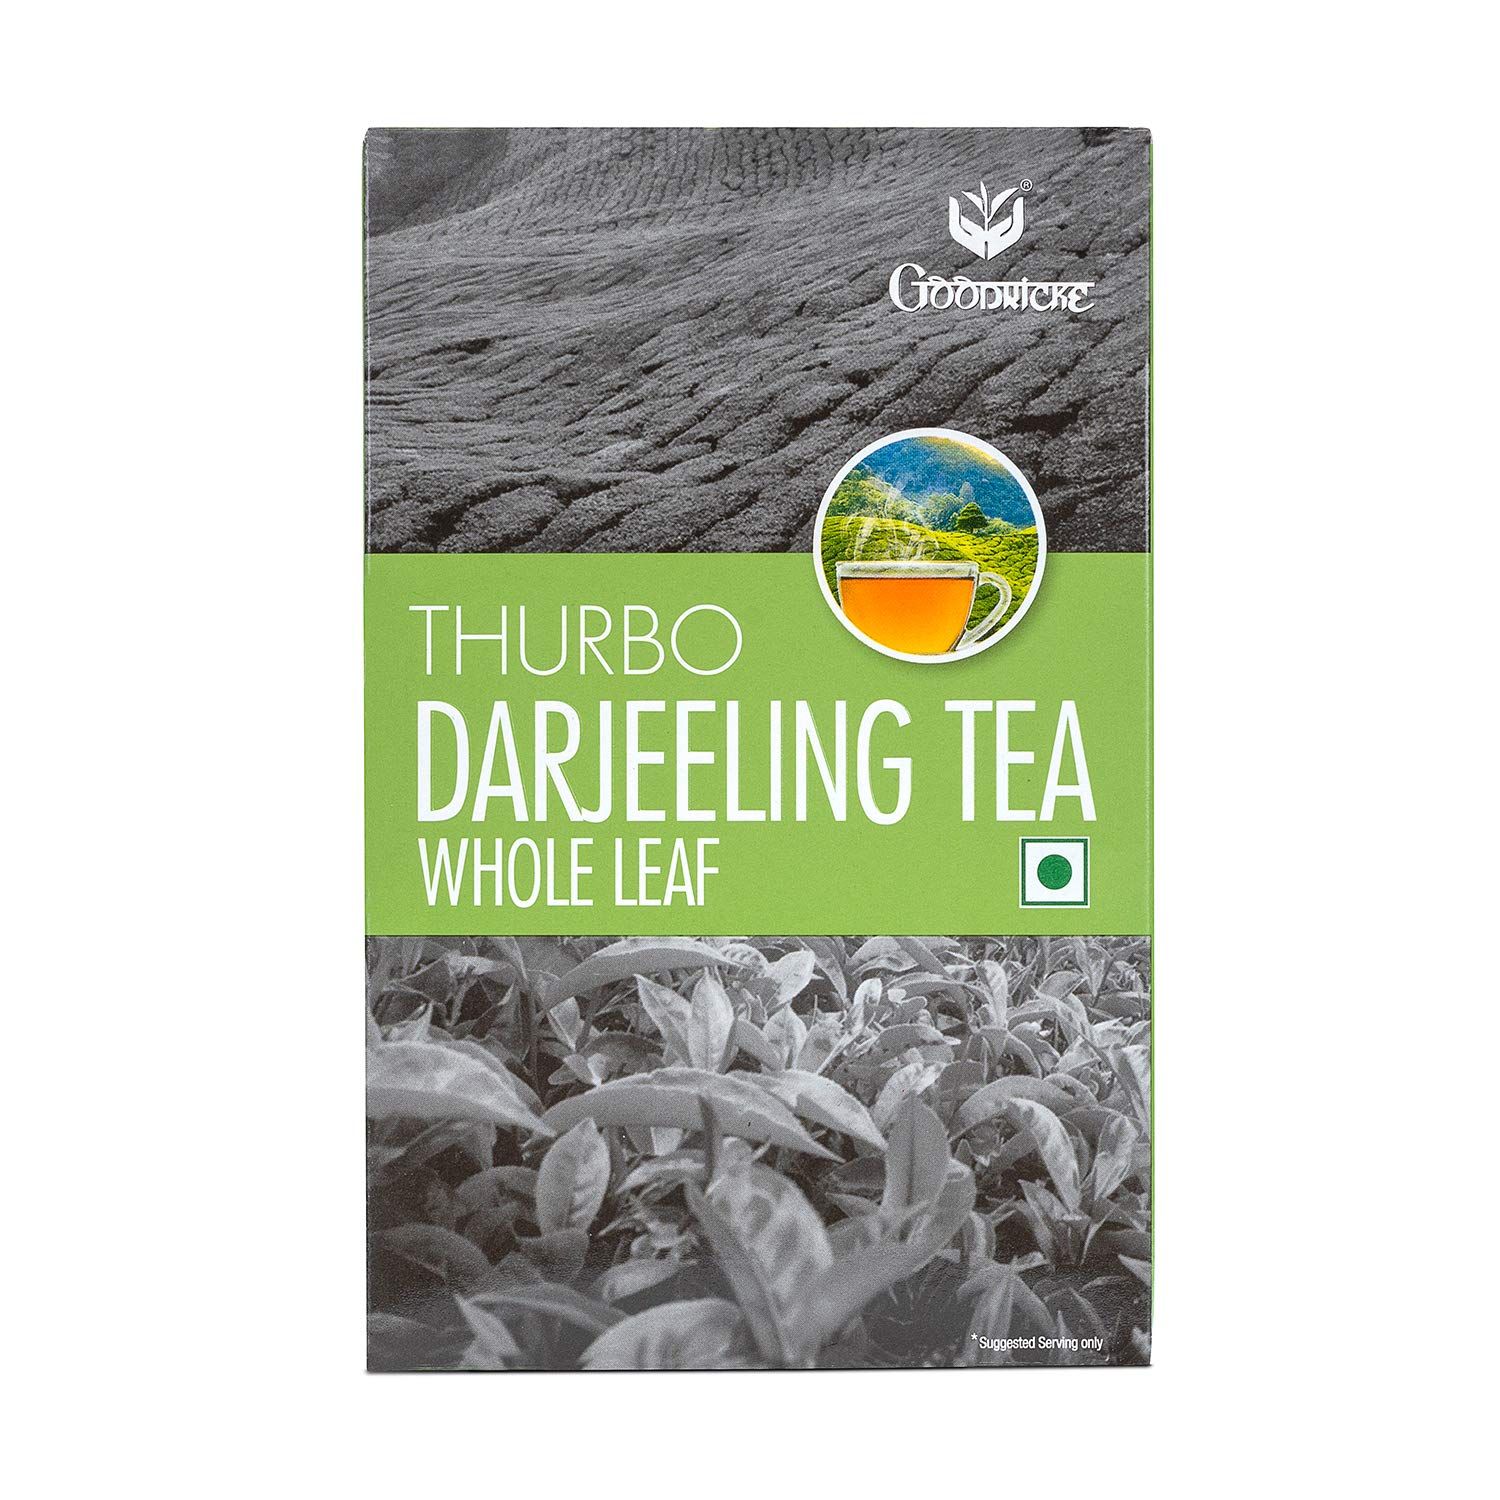 Goodricke Thurbo Darjeeling Single Estate Whole Leaf Tea Image